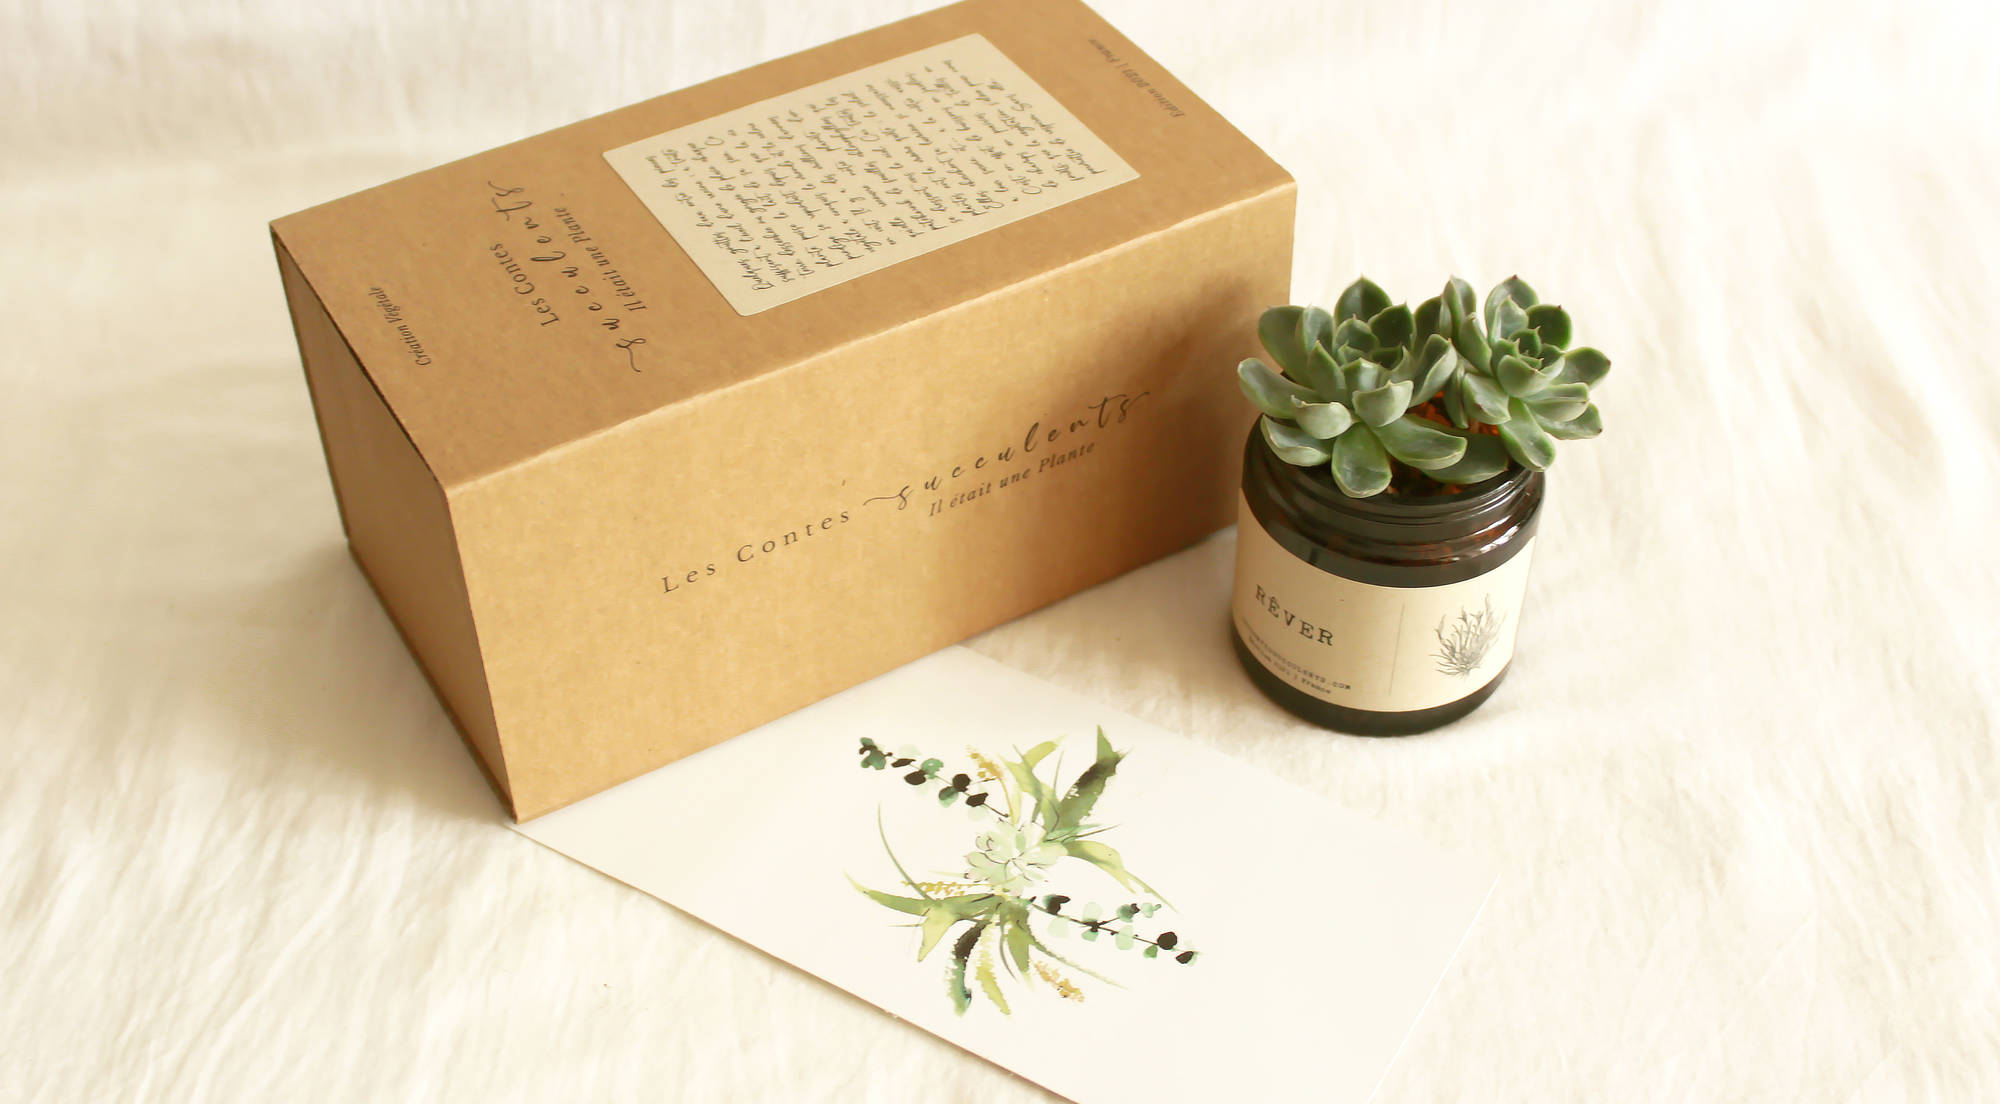 Coffrets cadeaux plantes personnalisées - Les Contes Succulents